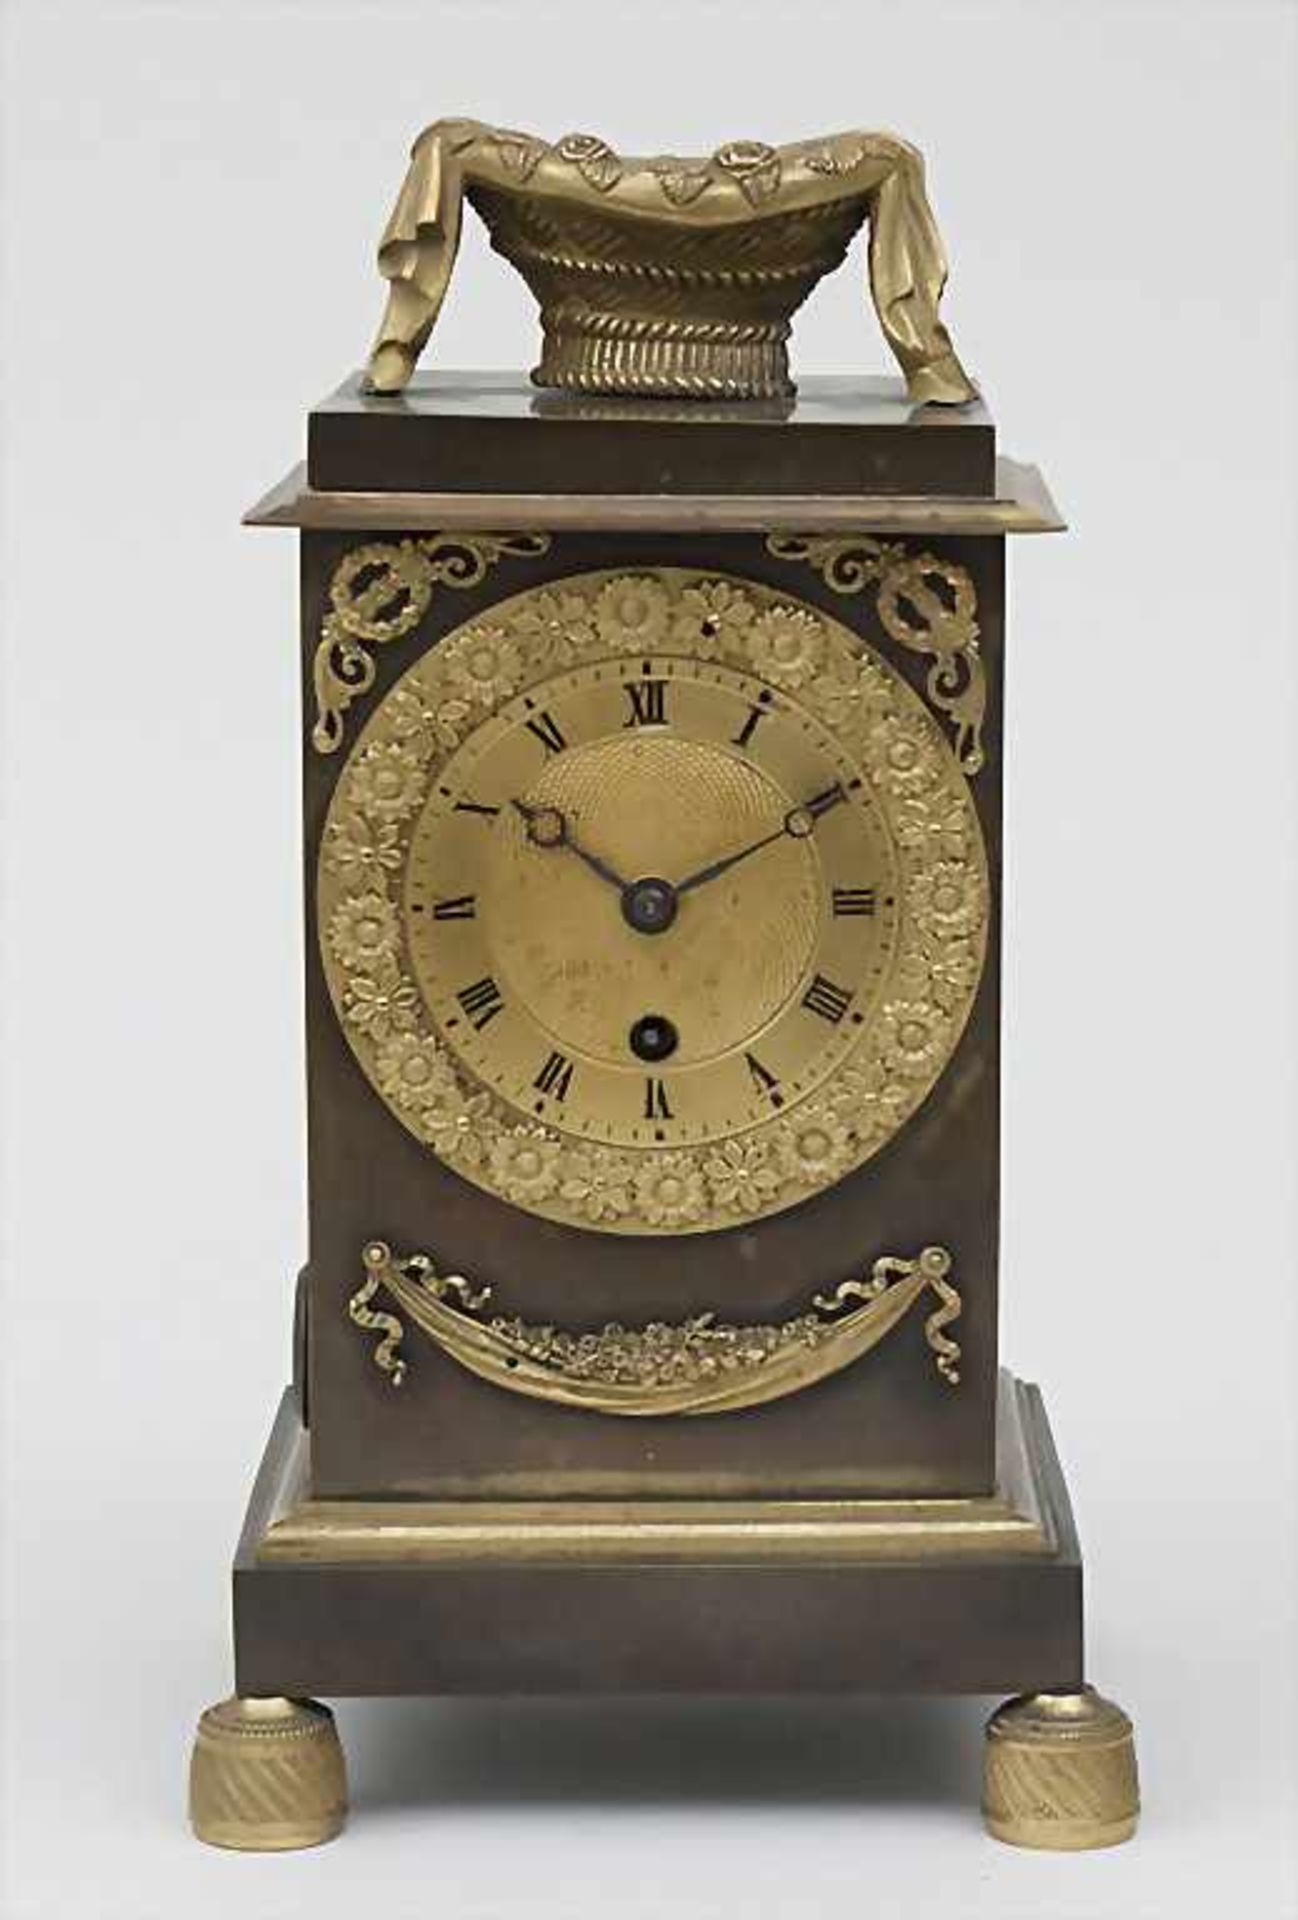 Pendule Epoque Restauration, Paris, ca. 1830Gehäuse: Bronze partiell vergoldet, mattiert,Uhrwerk: